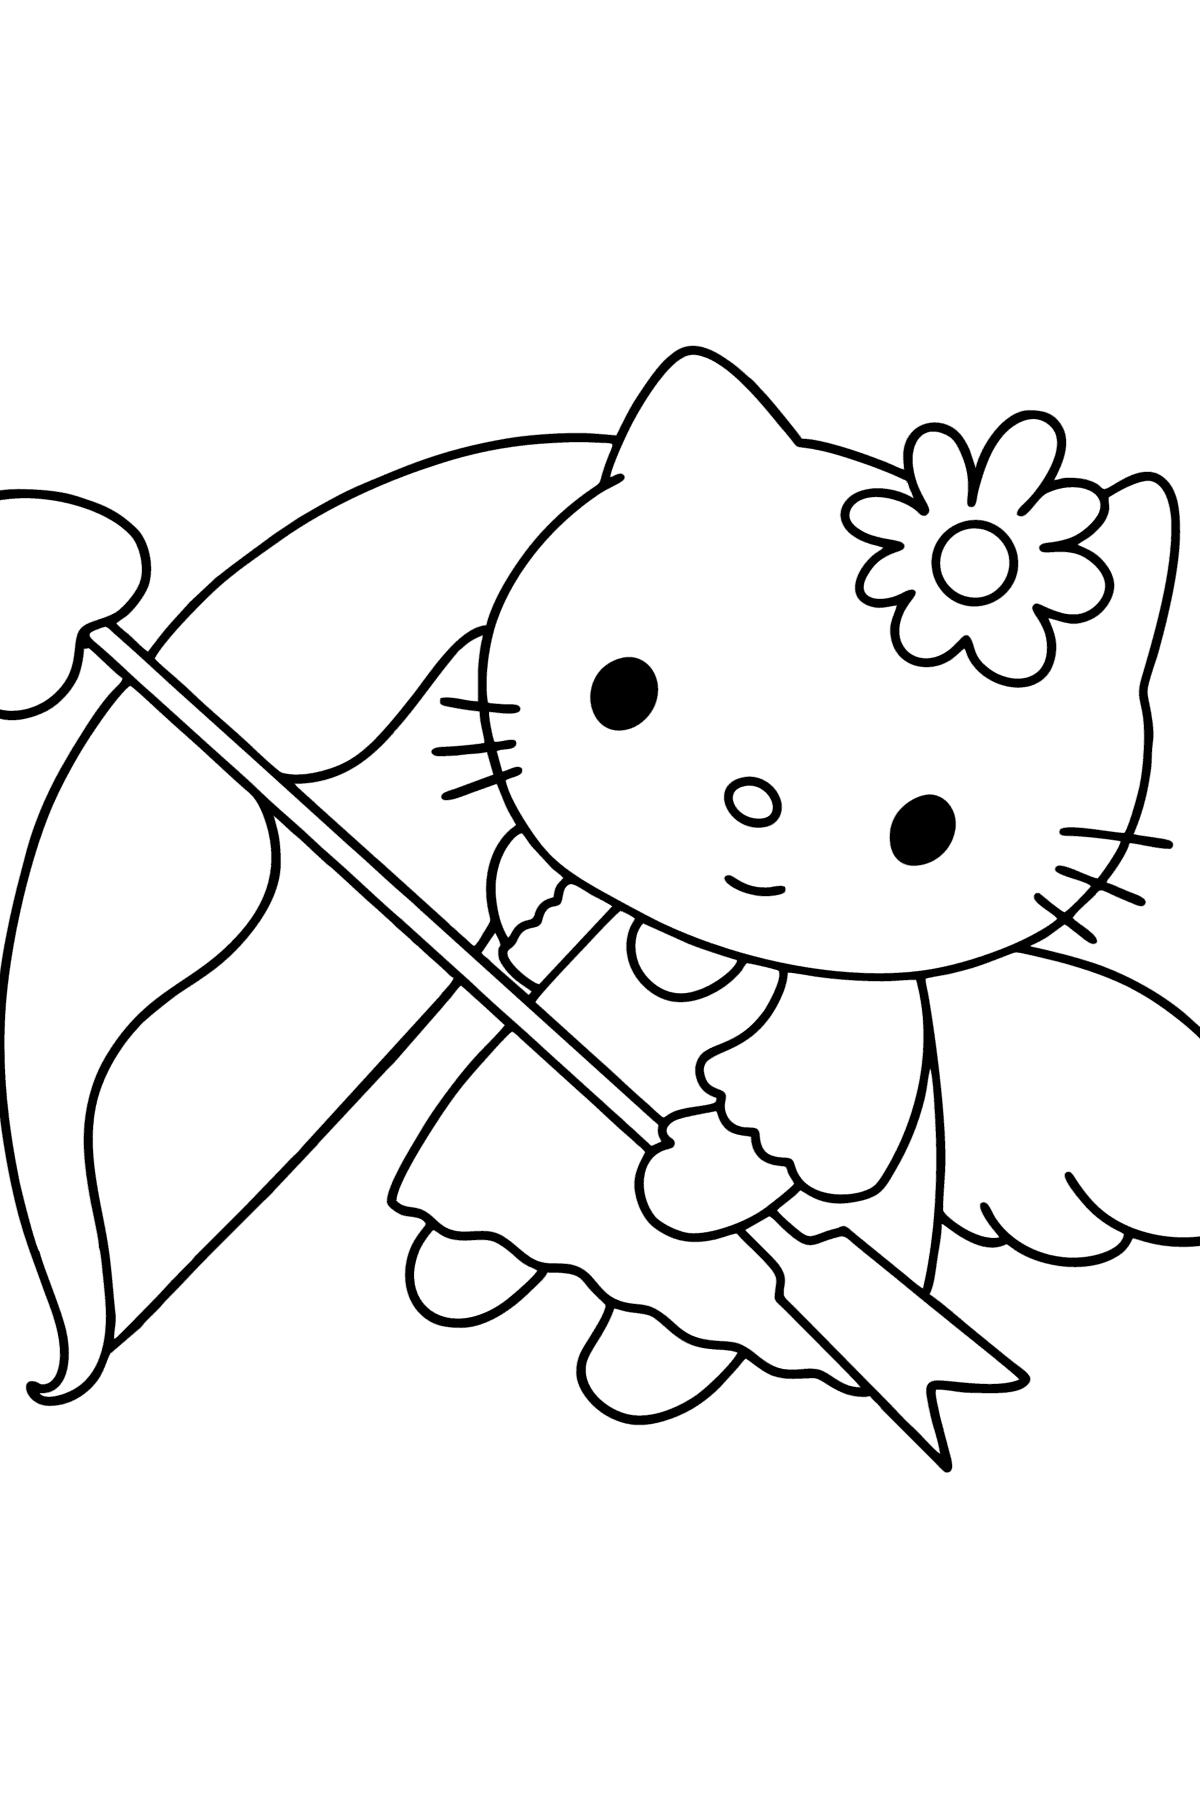 Раскраска Хелло Китти (Hello Kitty) в день святого валентина - Картинки для Детей